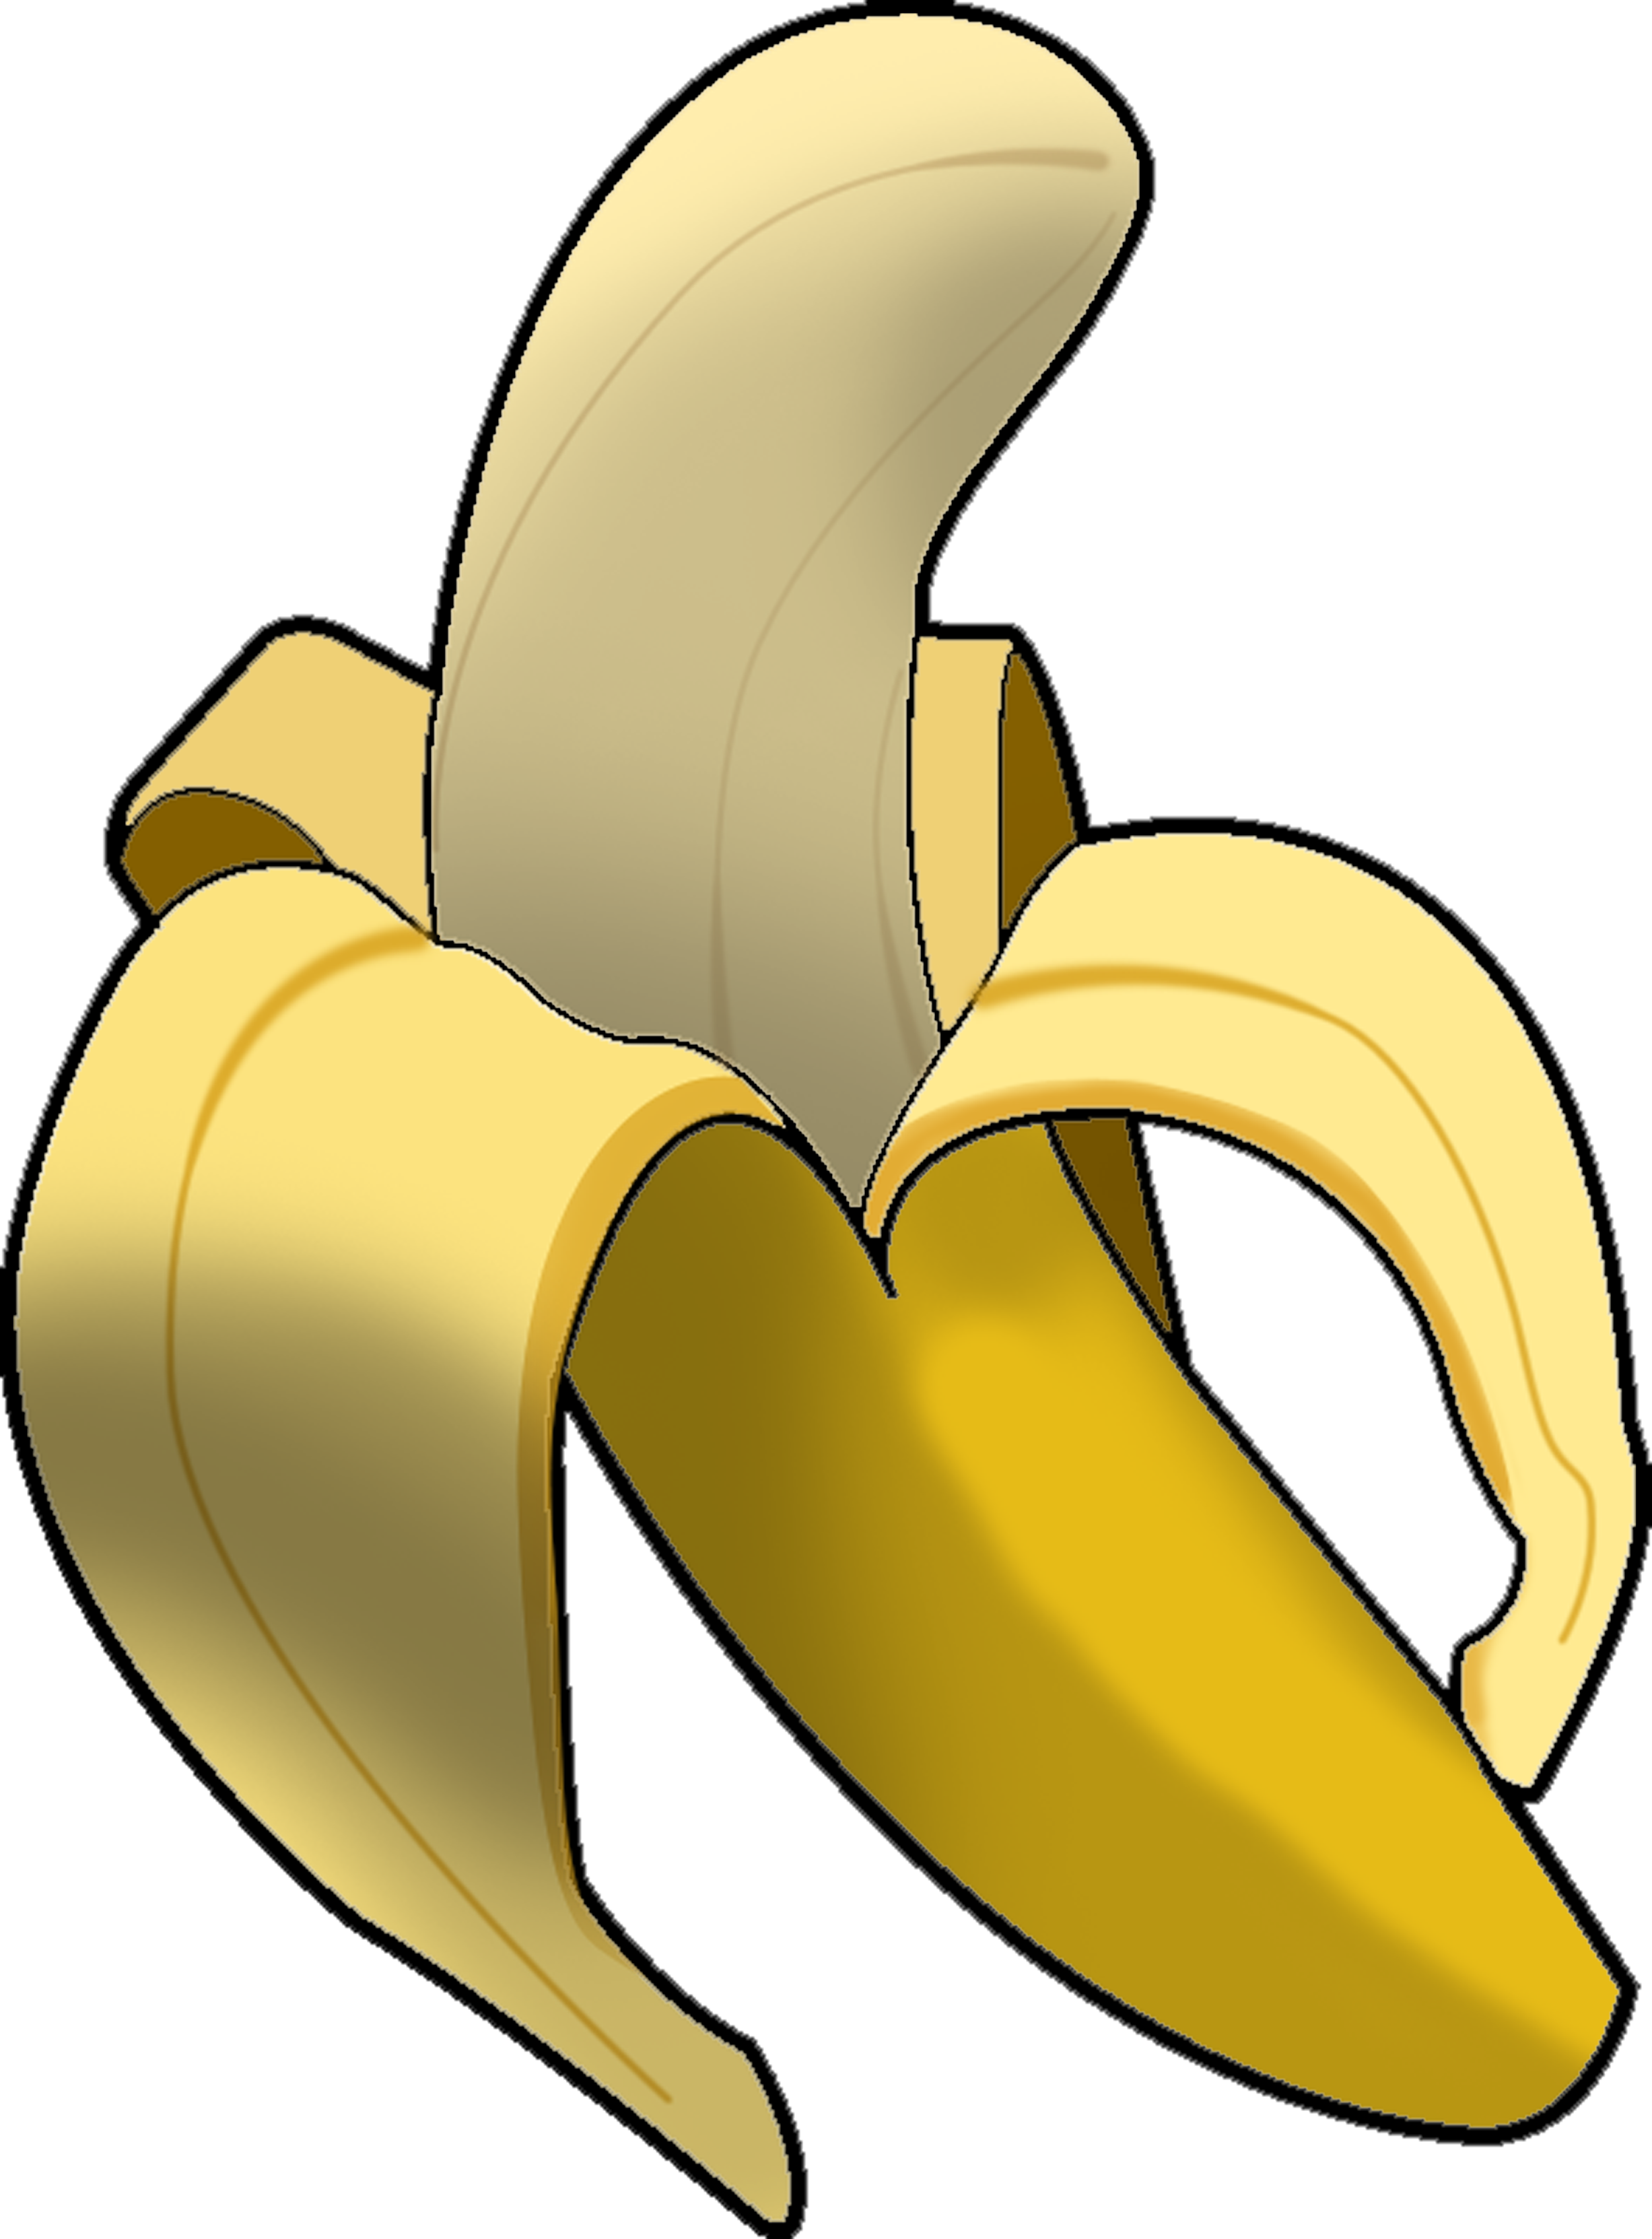 Bananas clipart. Free download transparent .PNG, banana png ...